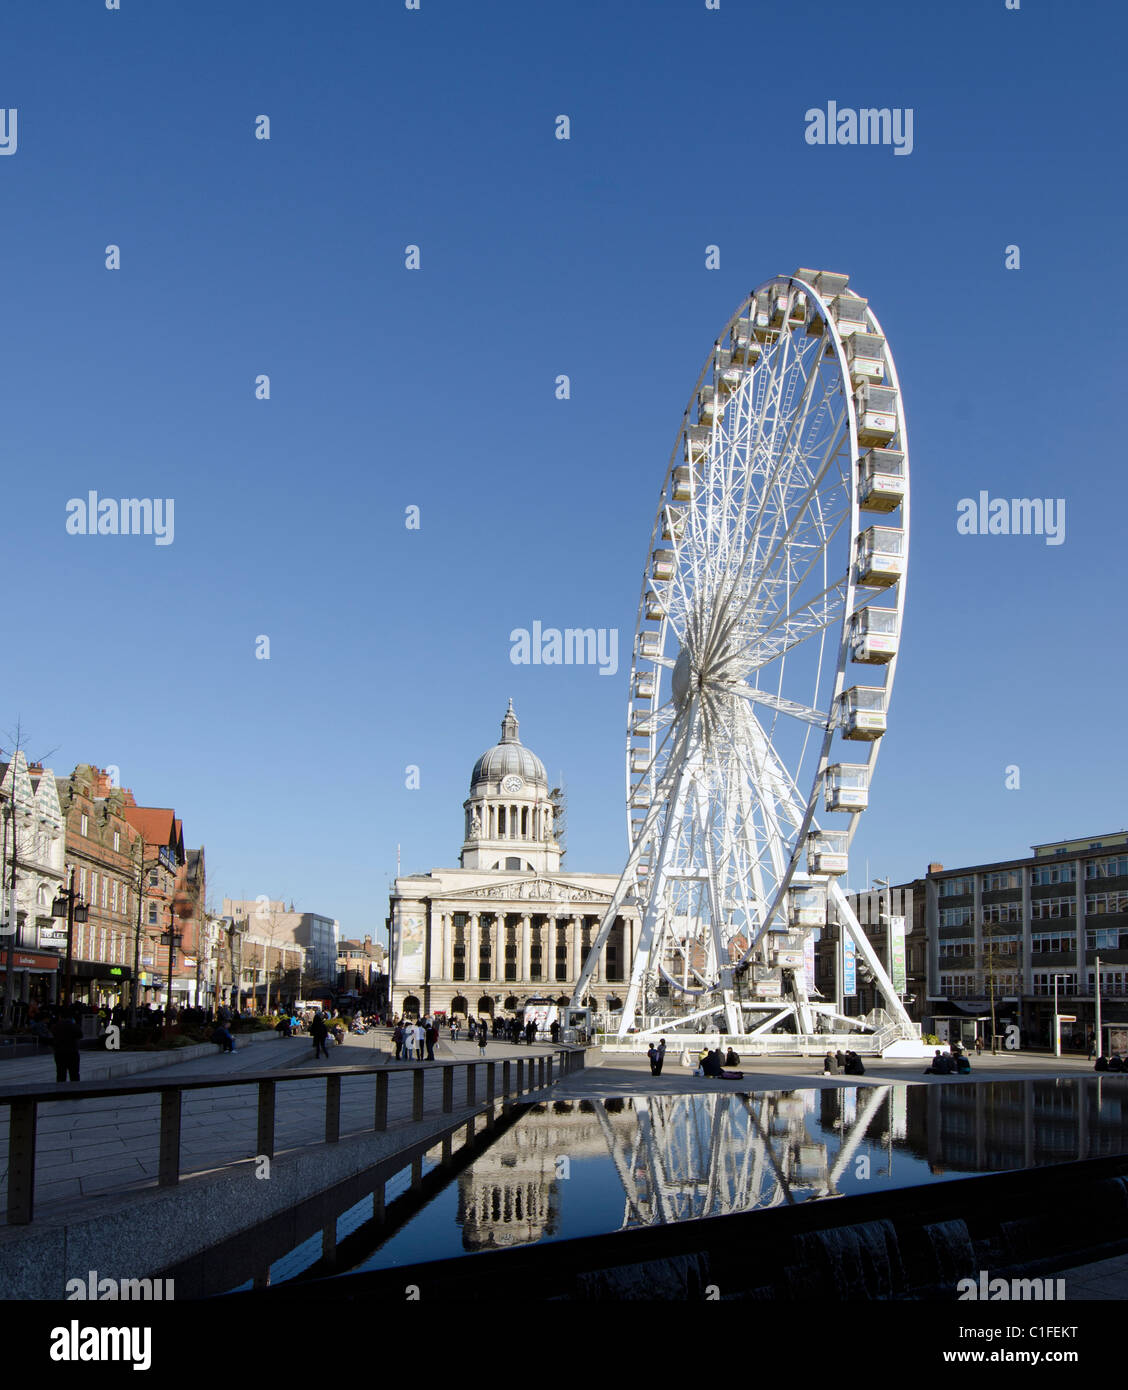 Ruota panoramica Ferris nella vecchia piazza del mercato di Nottingham, Regno Unito Foto Stock